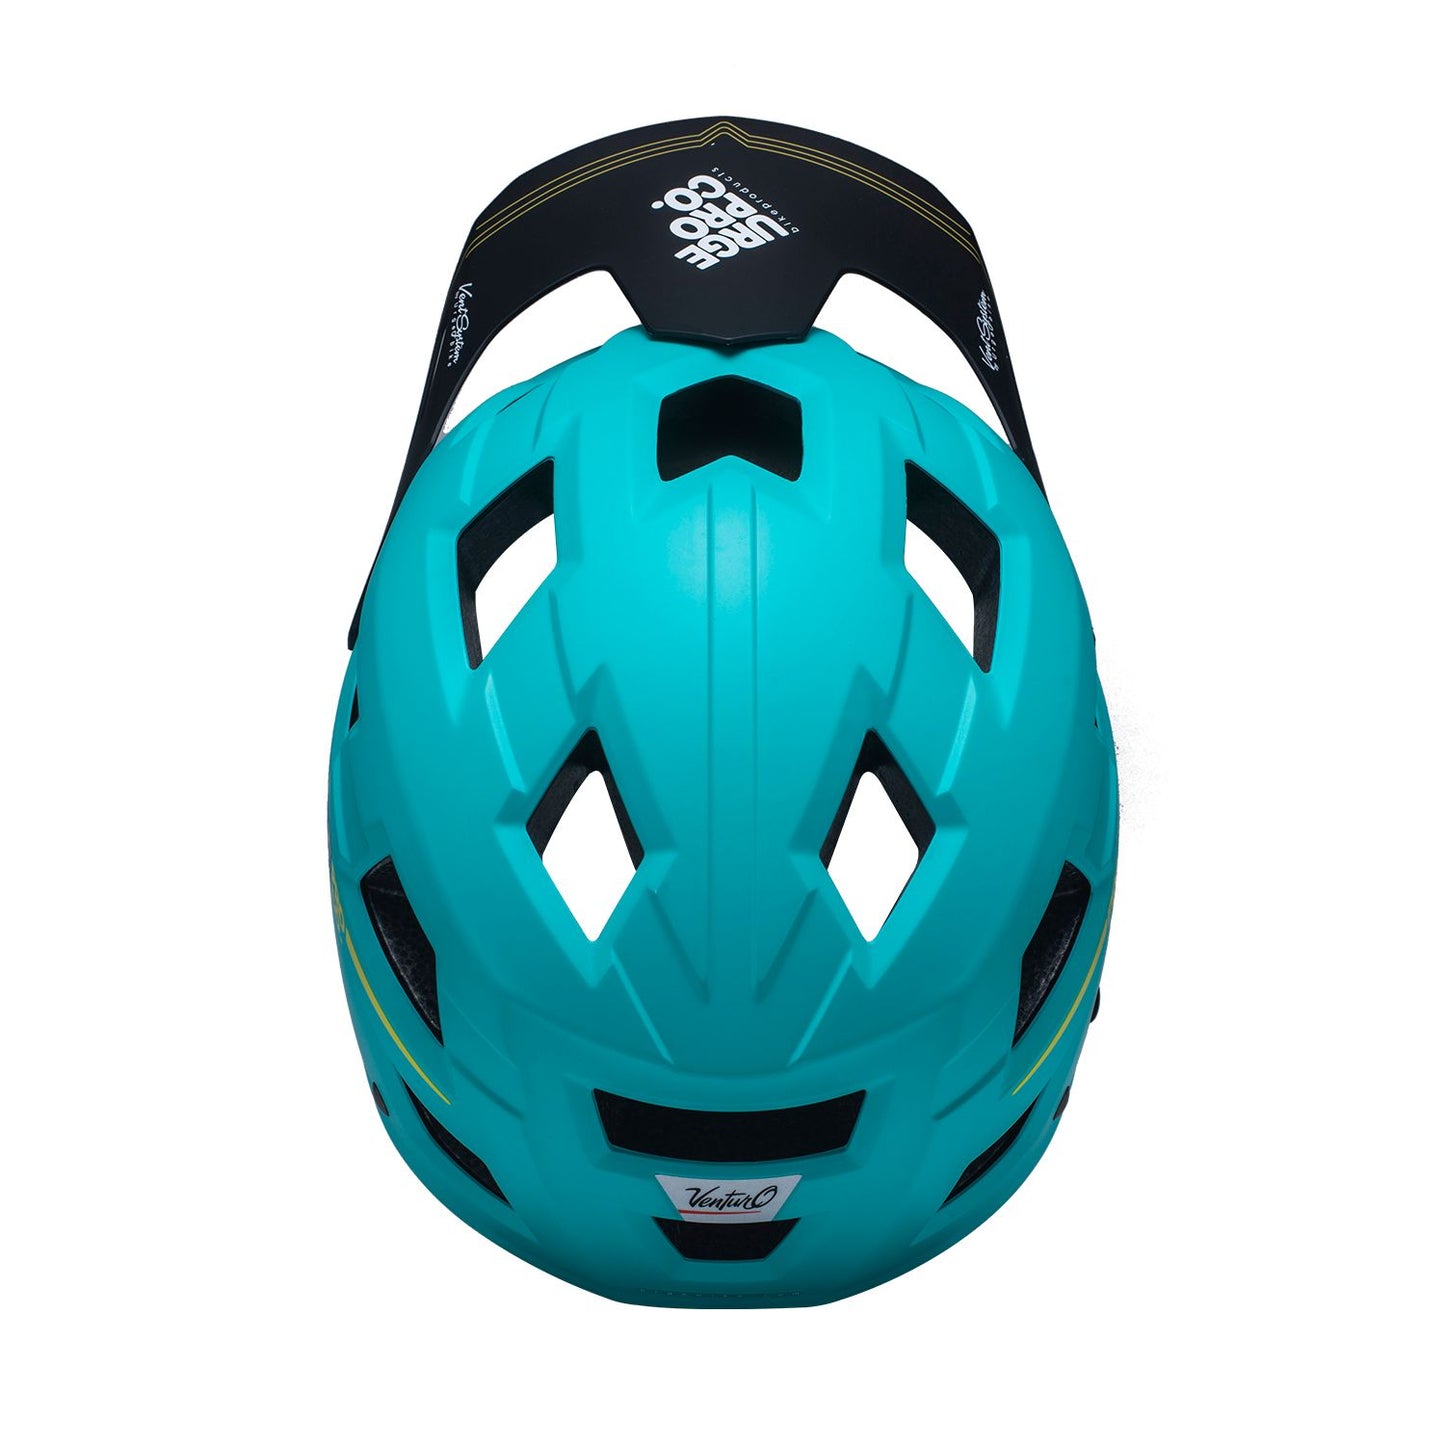 URGE MTB Helmet Venturo Green L/XL